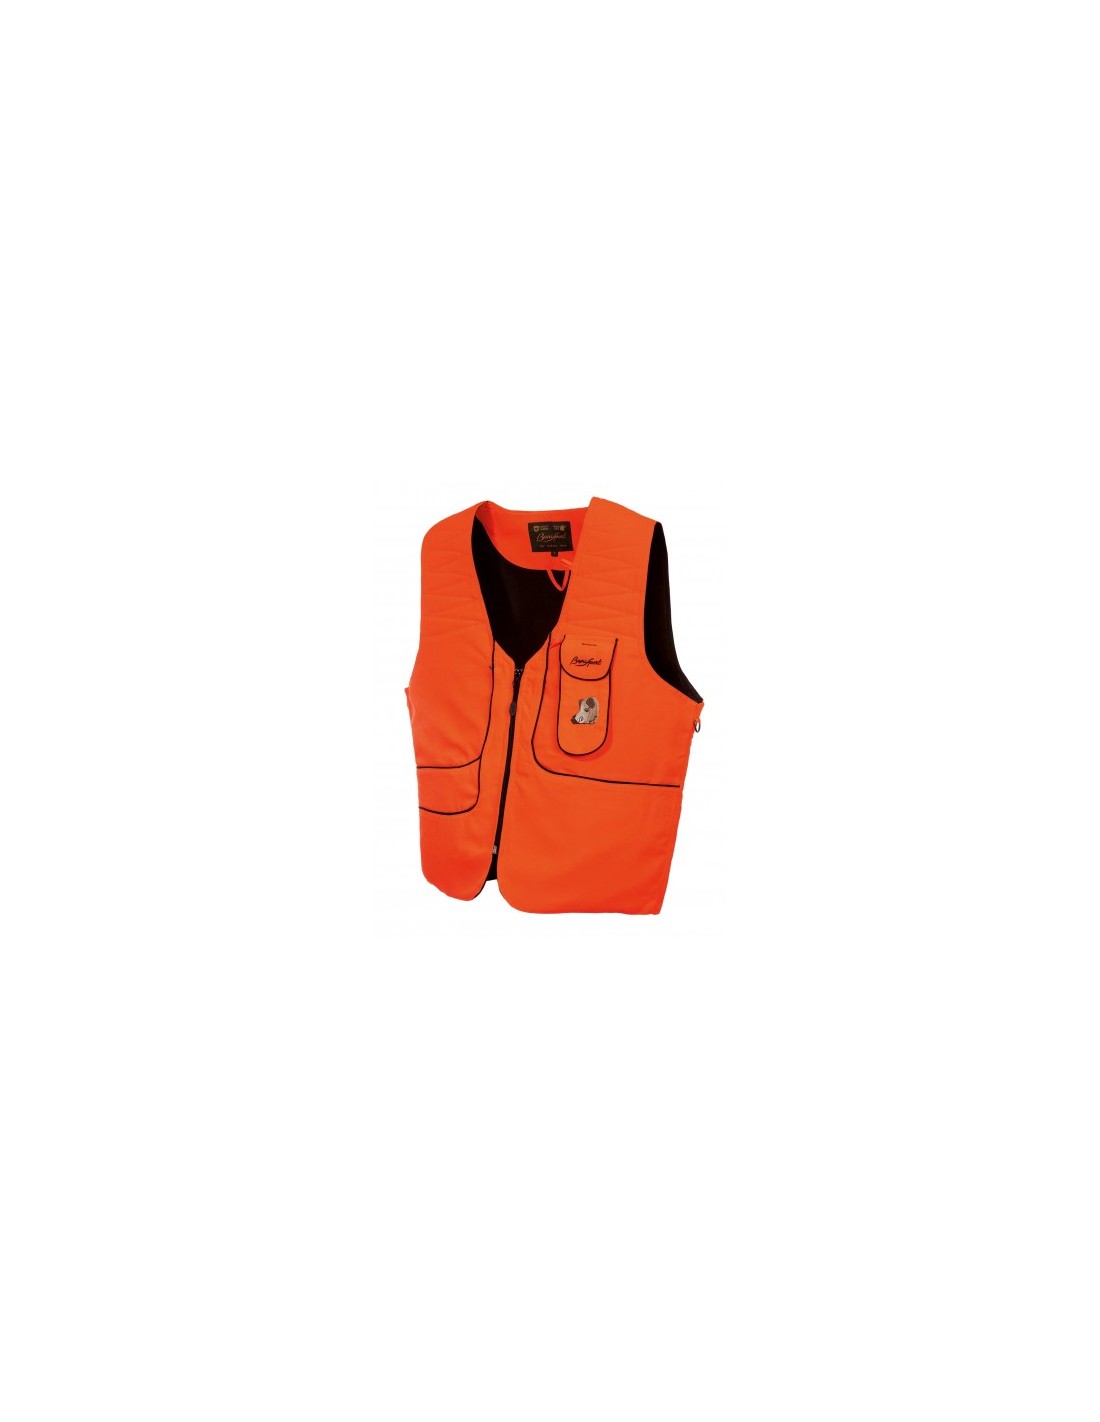 Chaleco fluorescente laranxa curto - Chaleco de caza de Benisport